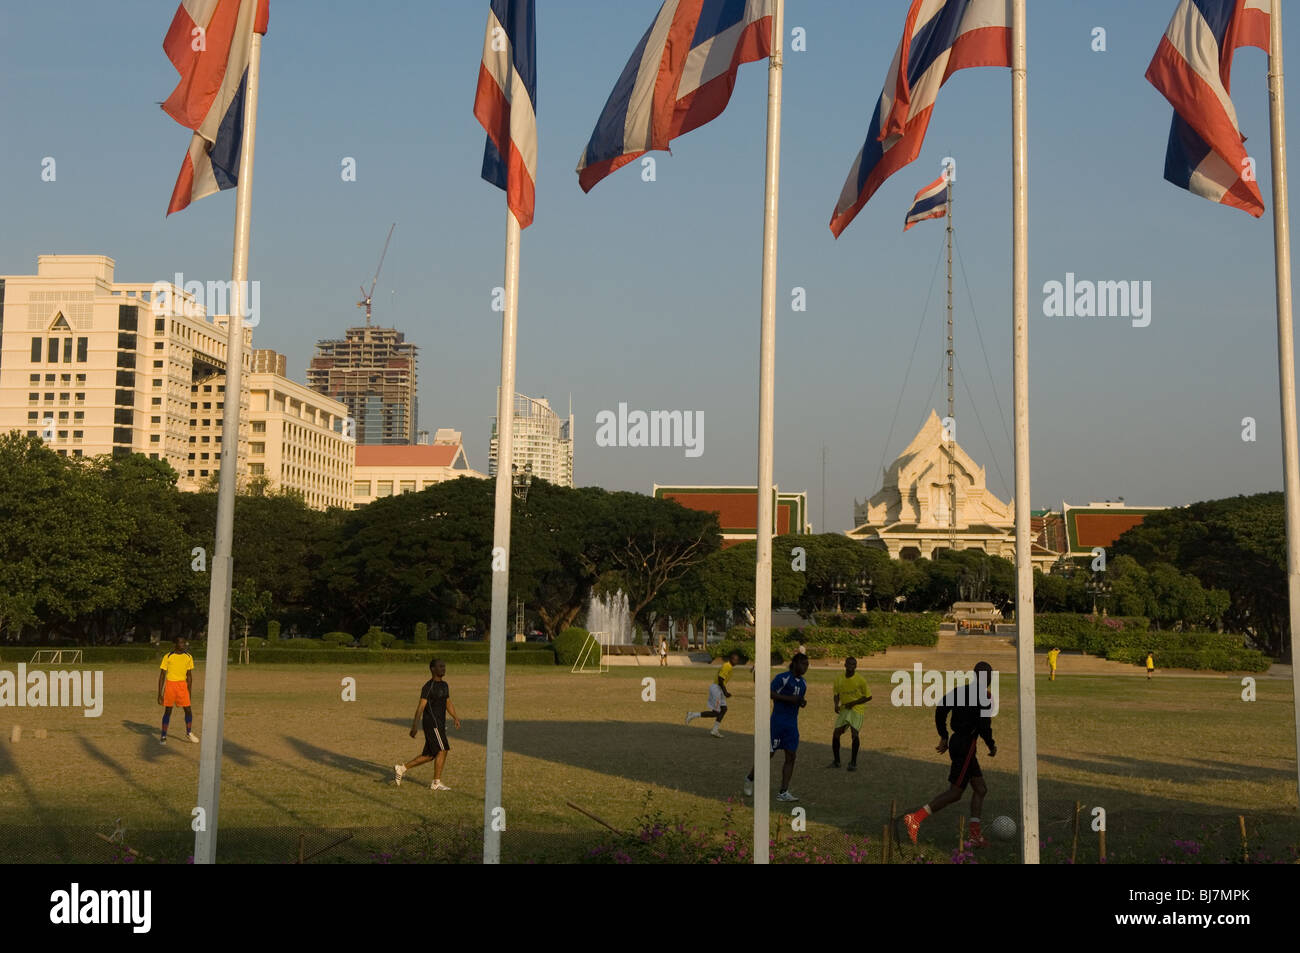 Chulalongkorn University playing fields, Bangkok, Thailand Stock Photo